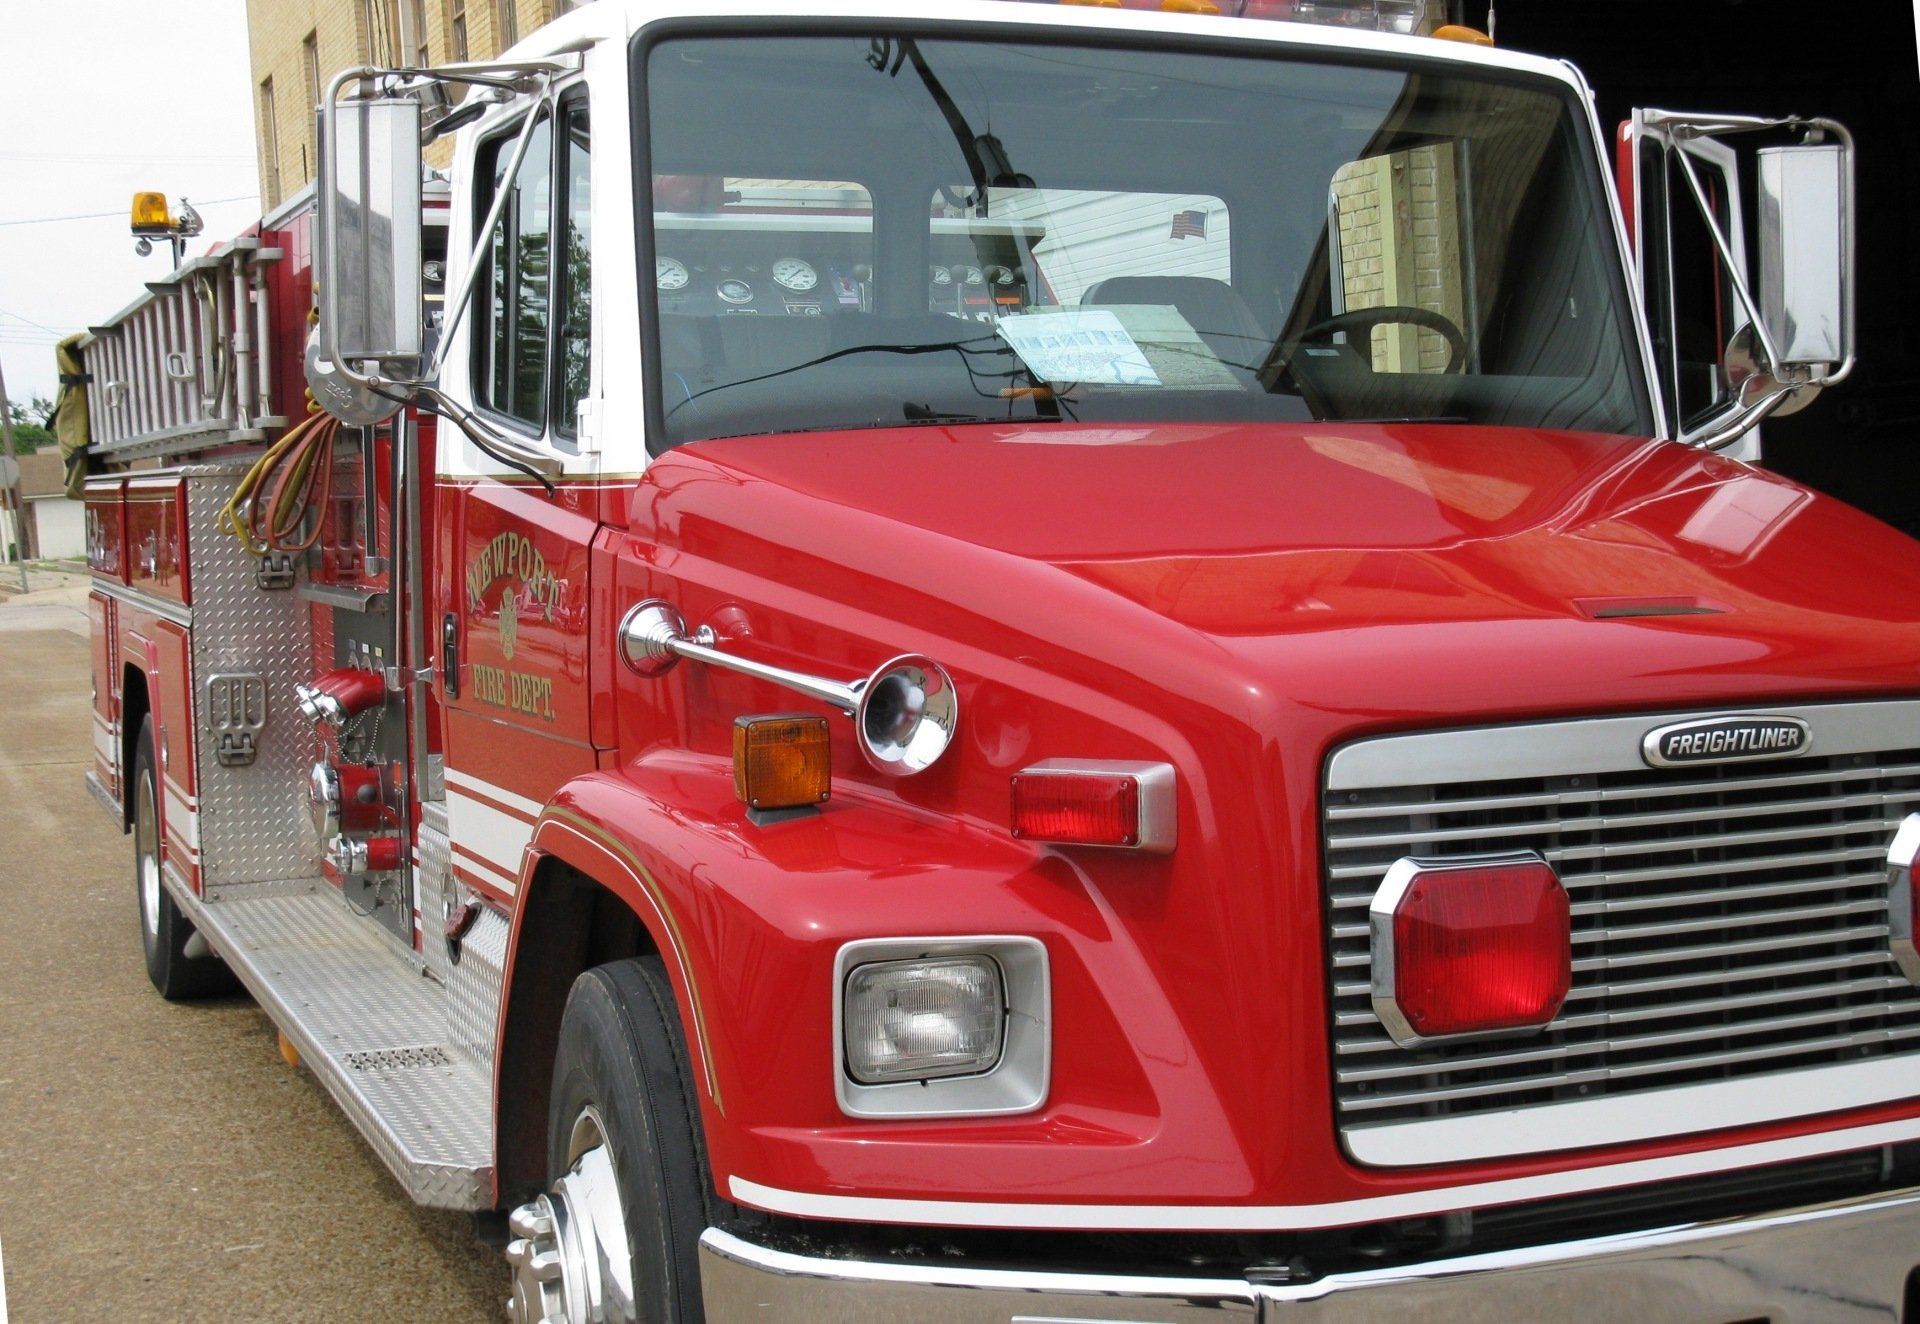 Fire engine - Newport, Arkansas